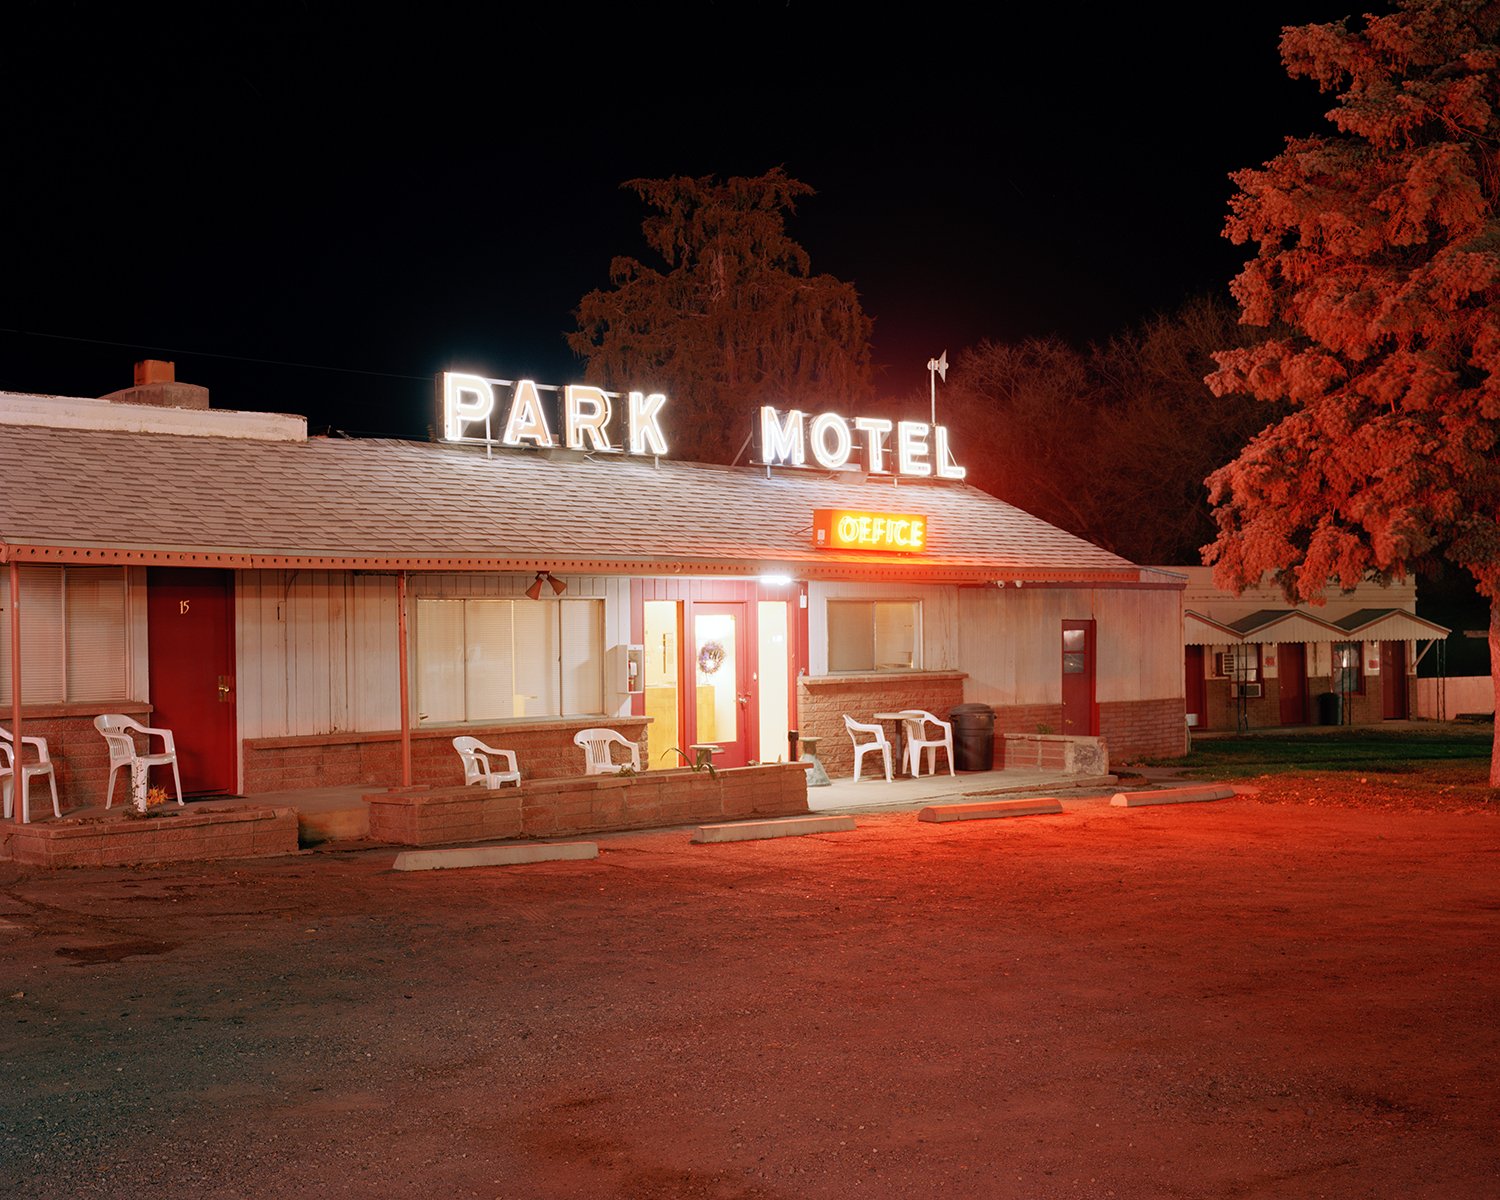 Park Motel.jpg